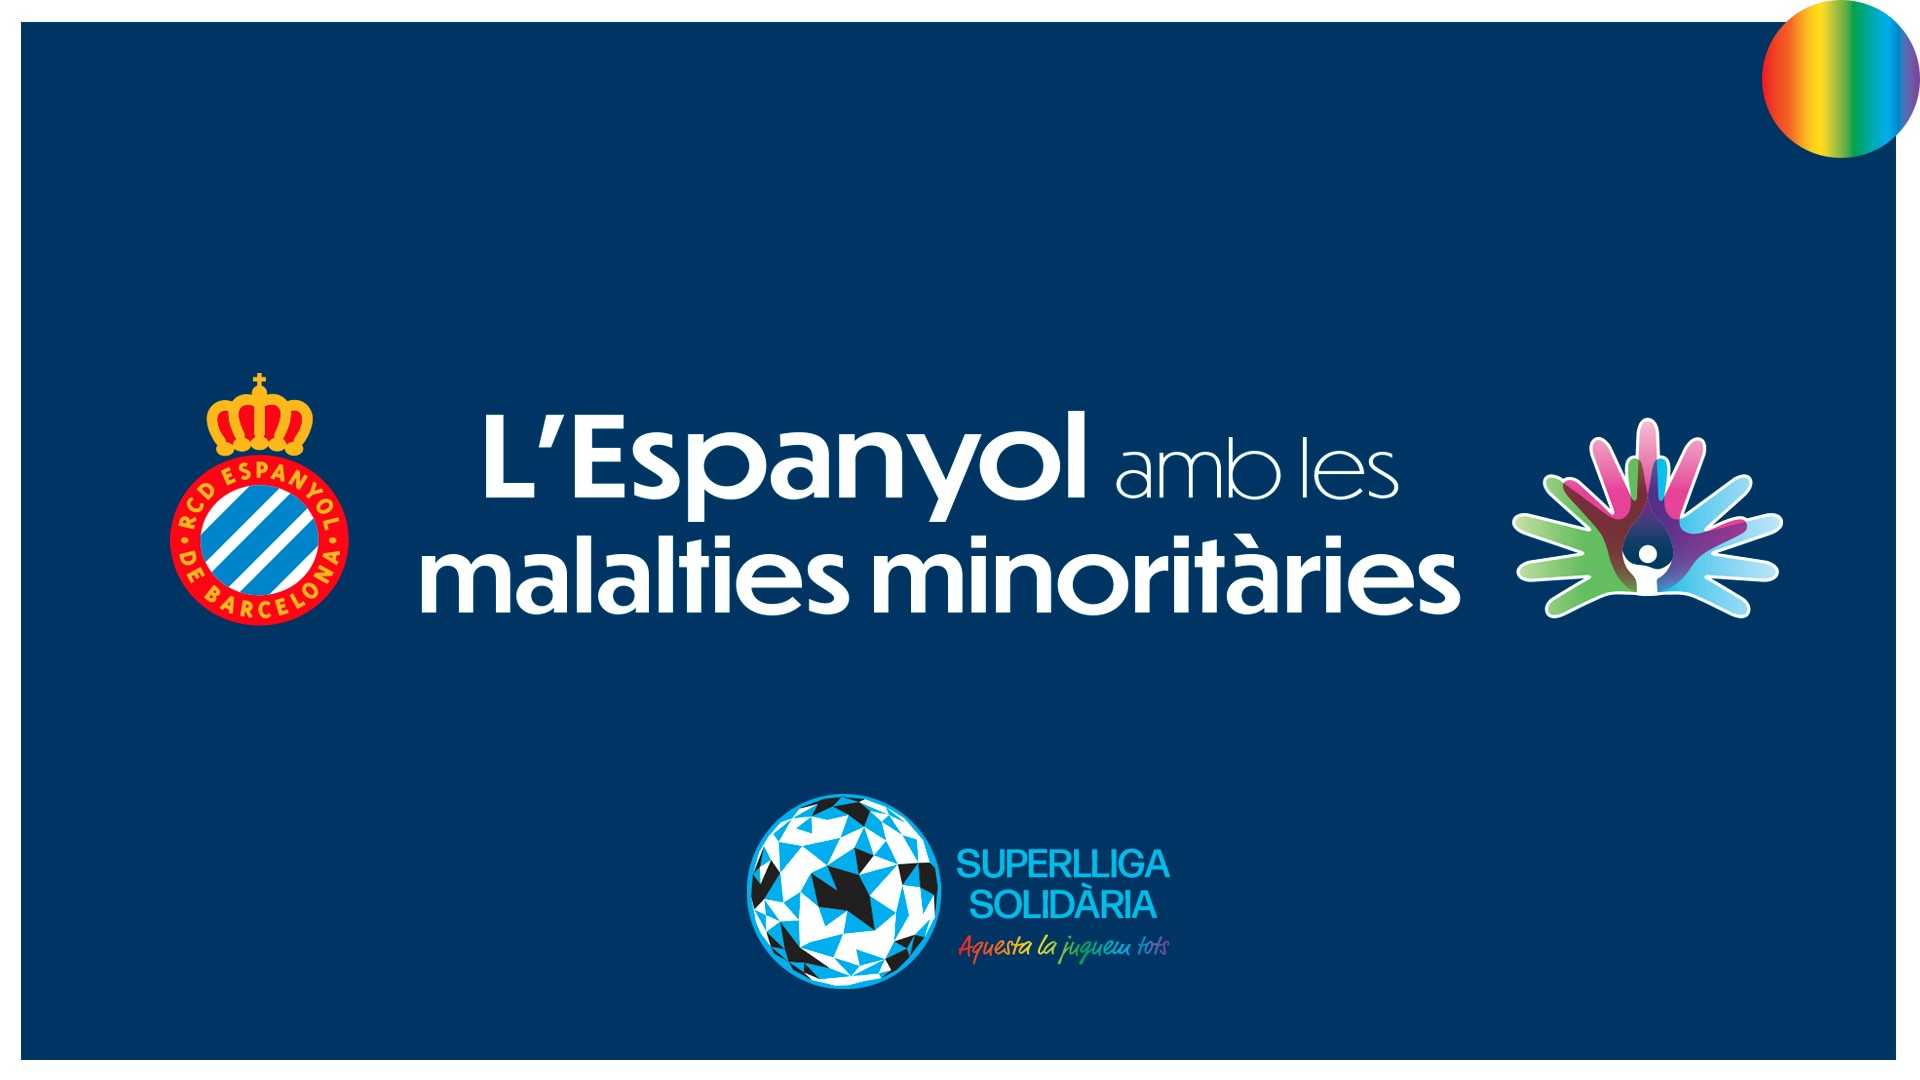 El Espanyol se suma al Día Mundial de las Enfermedades Minoritarias